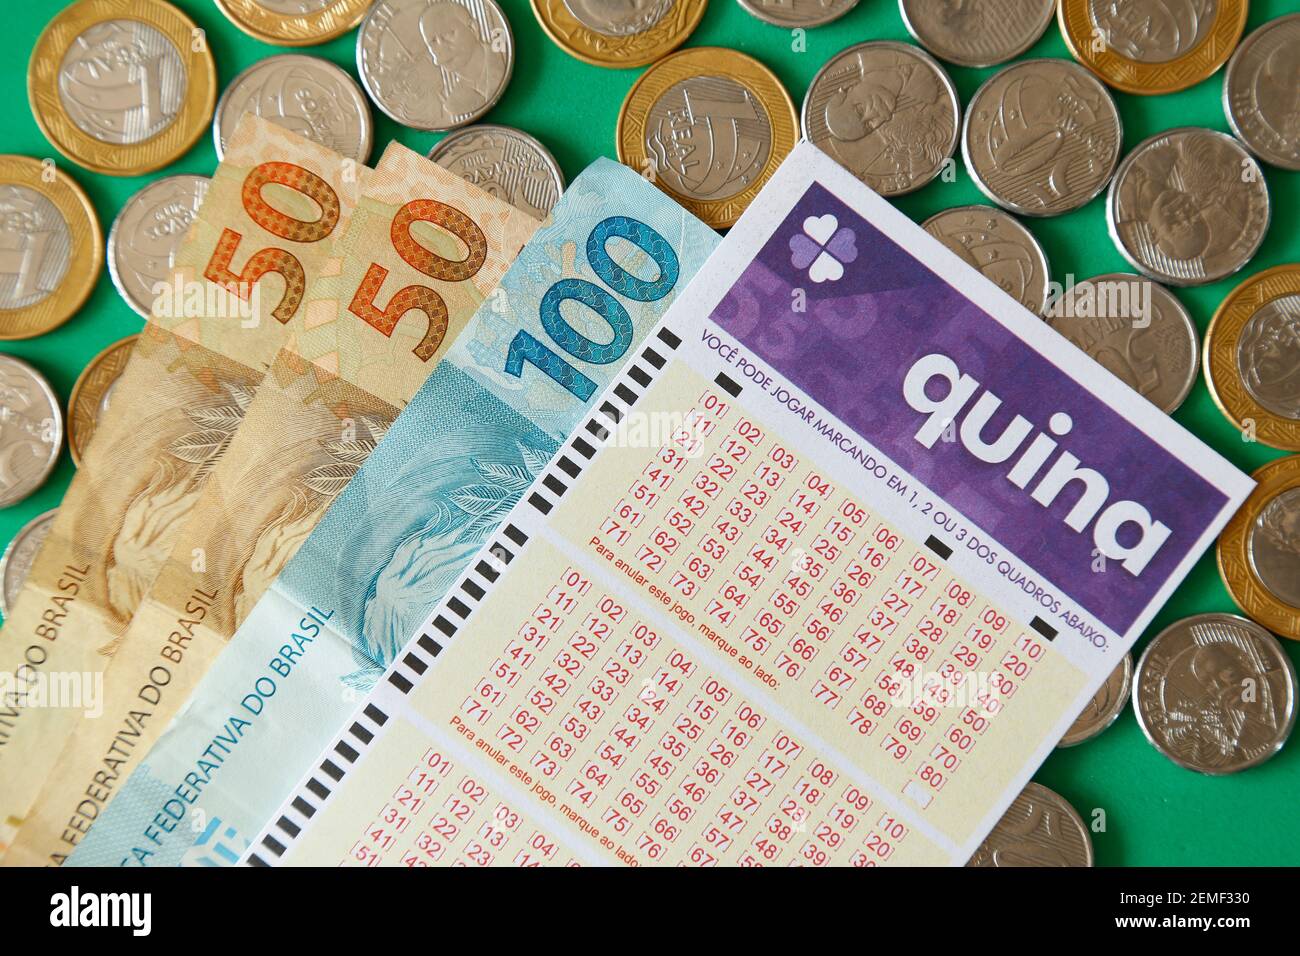 Minas Gerais, Brasile - 22 febbraio 2021: Banconote, monete e biglietto per lotteria Caixa Quina Foto Stock